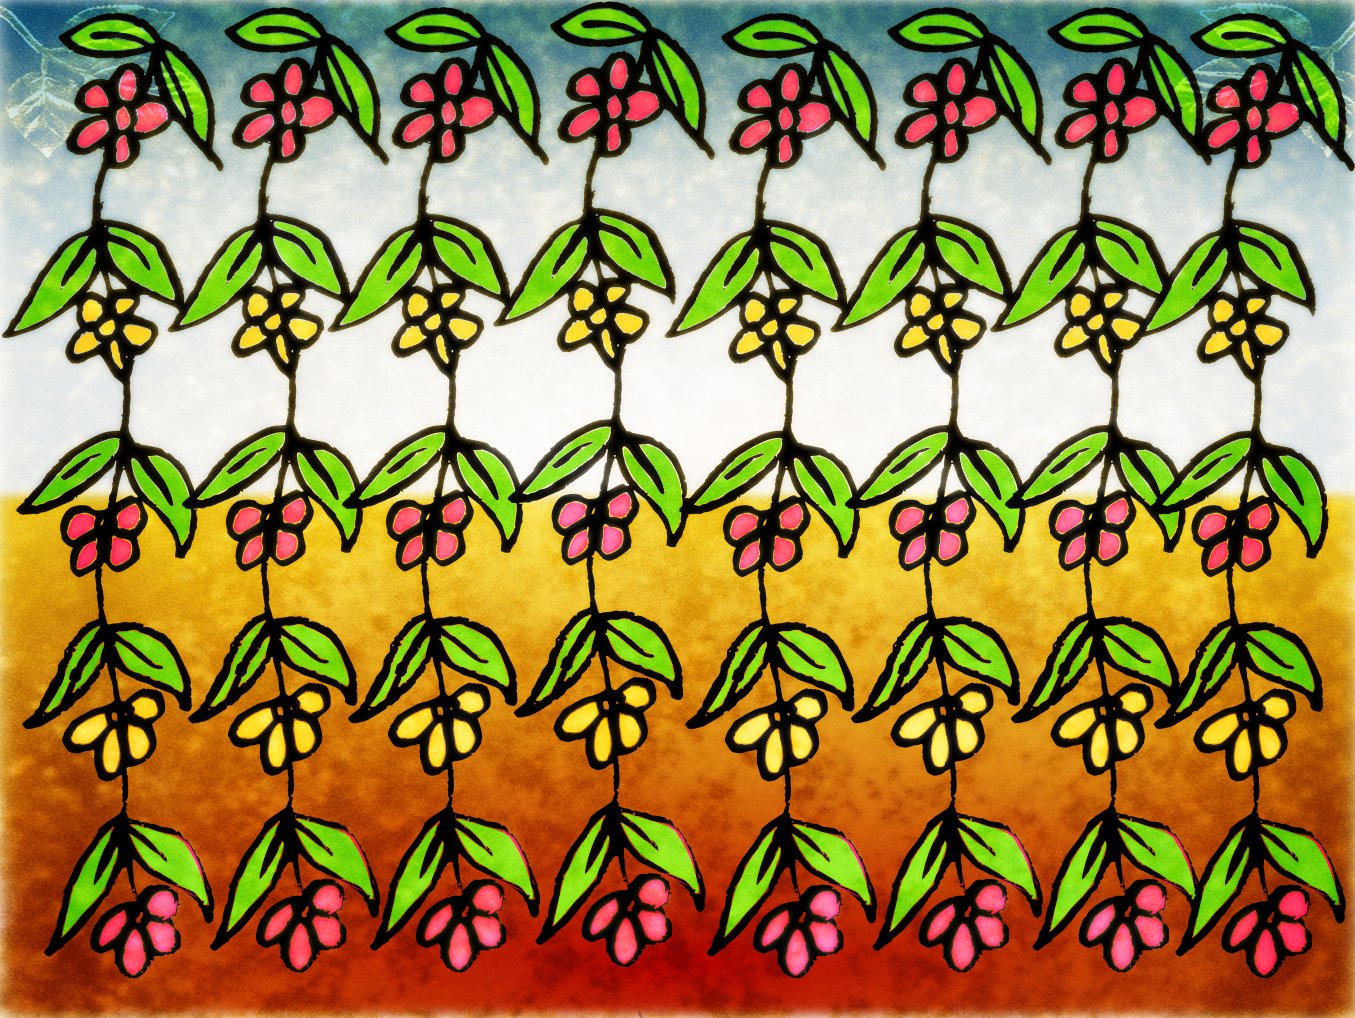 [flowerpattern-6.jpg]